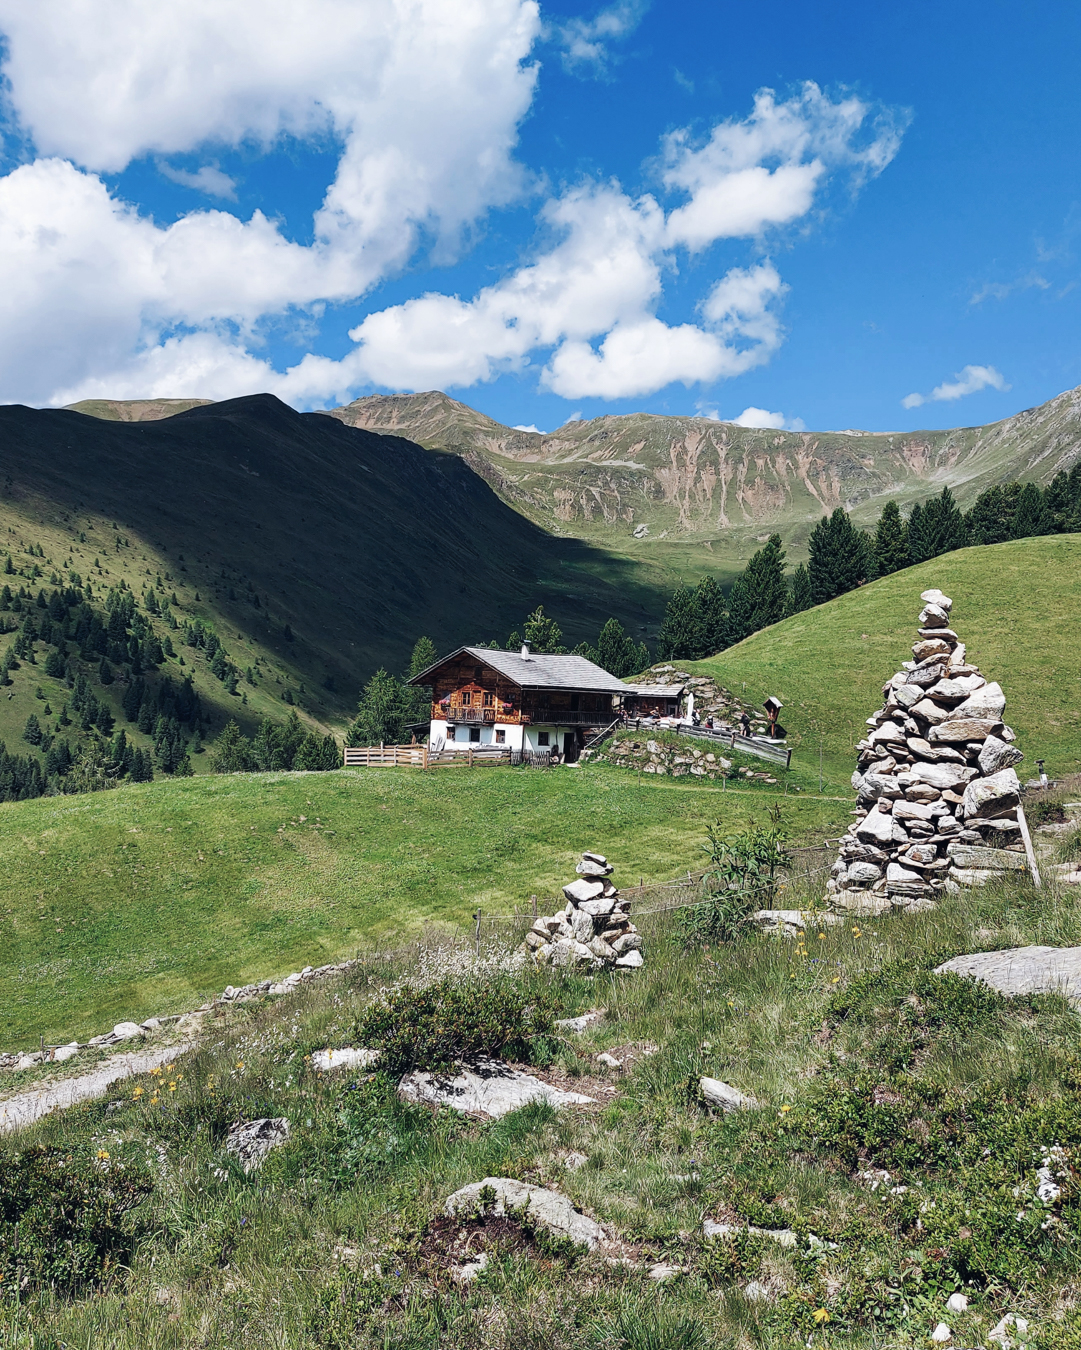 Estate in Alto Adige: organizzare una vacanza in Val Pusteria, malghe